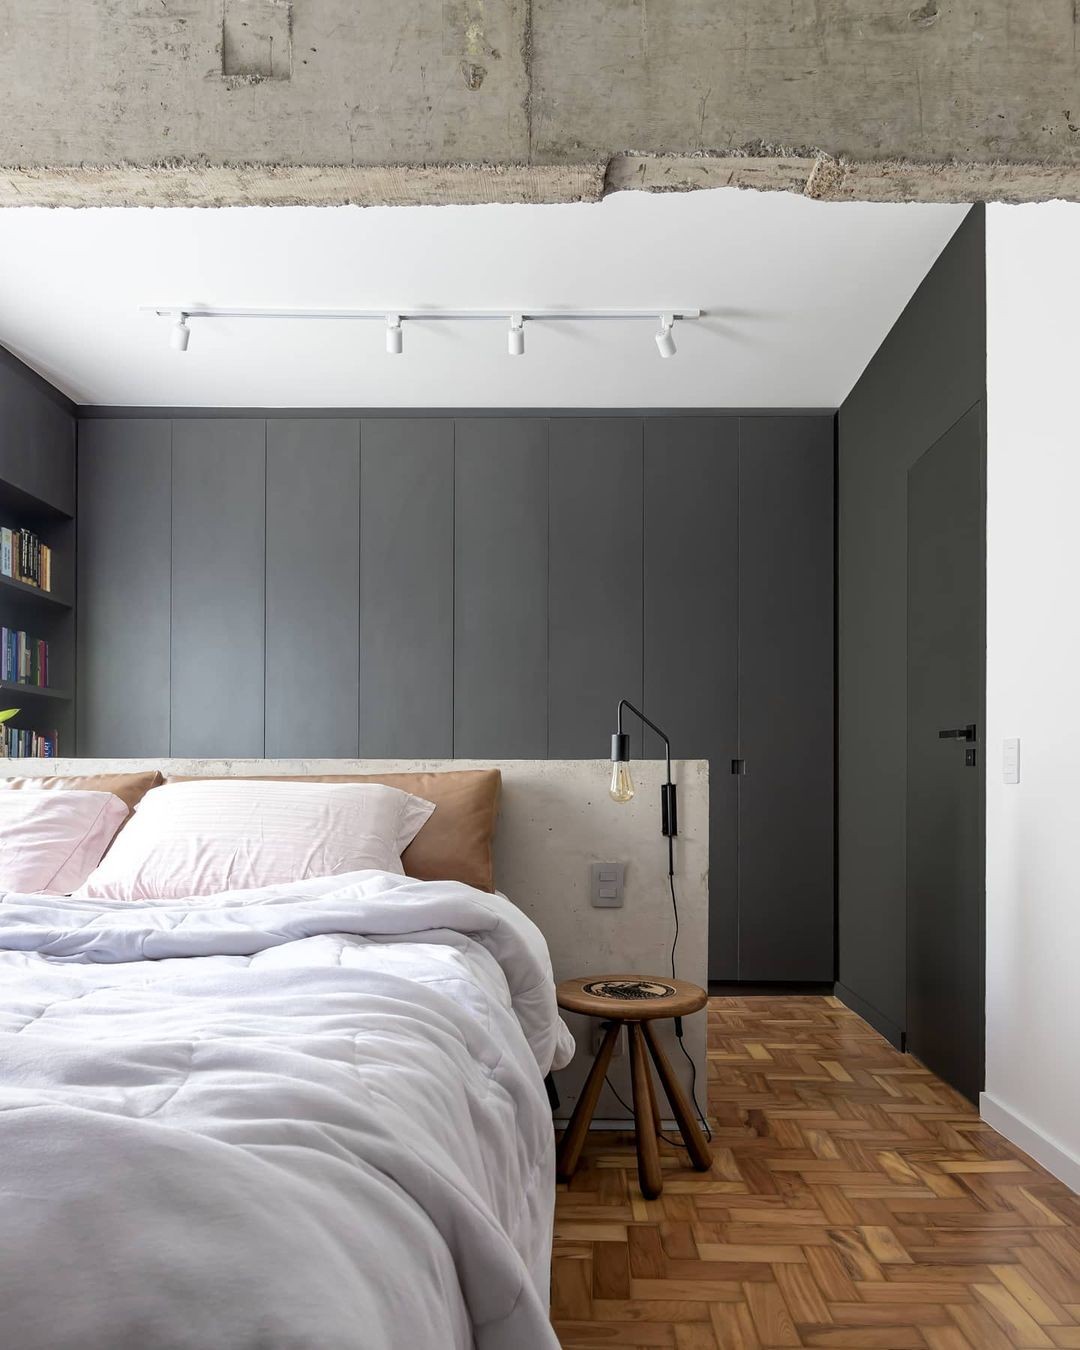 Décor do dia: quarto com cabeceira de concreto e armário preto (Foto: Monica Assan)